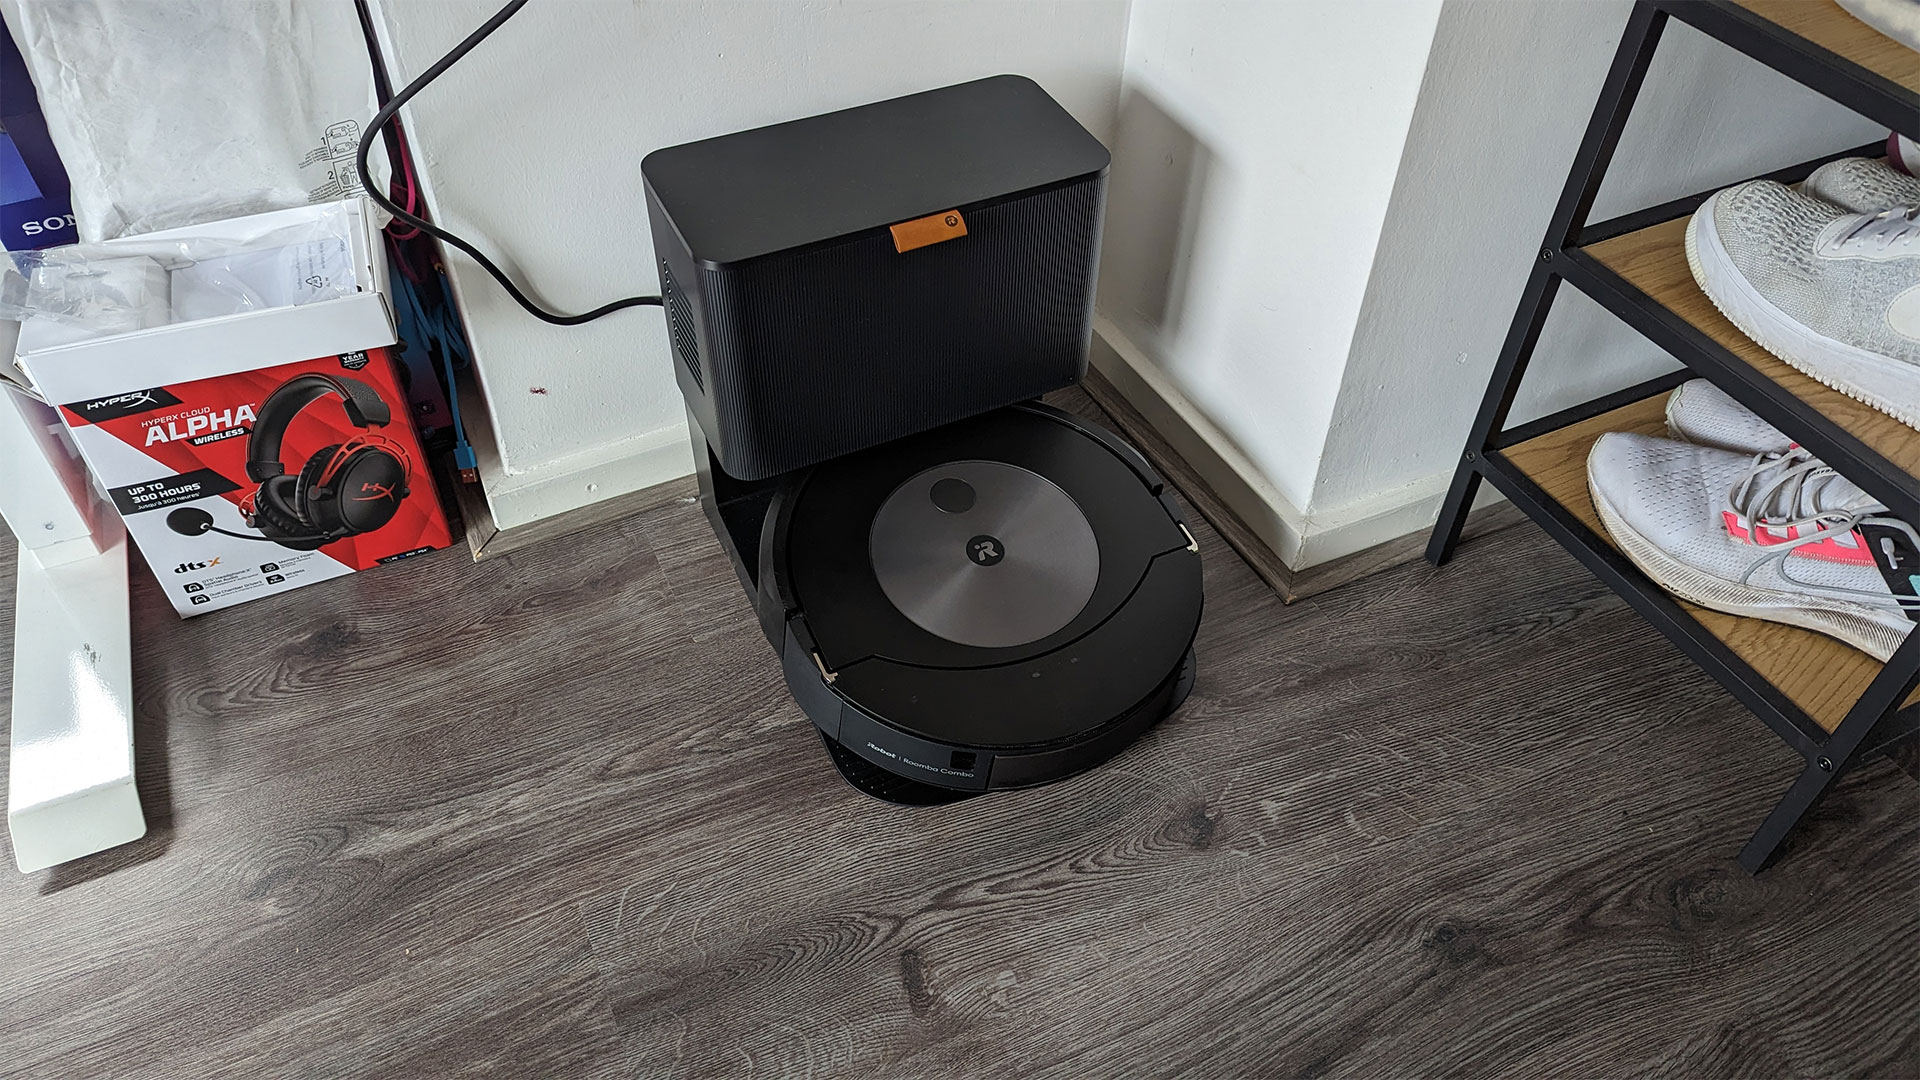 Kosciuszko Bemiddelaar Resistent Roomba Combo j7+ - laat dweilen over aan de pro's | ID.nl